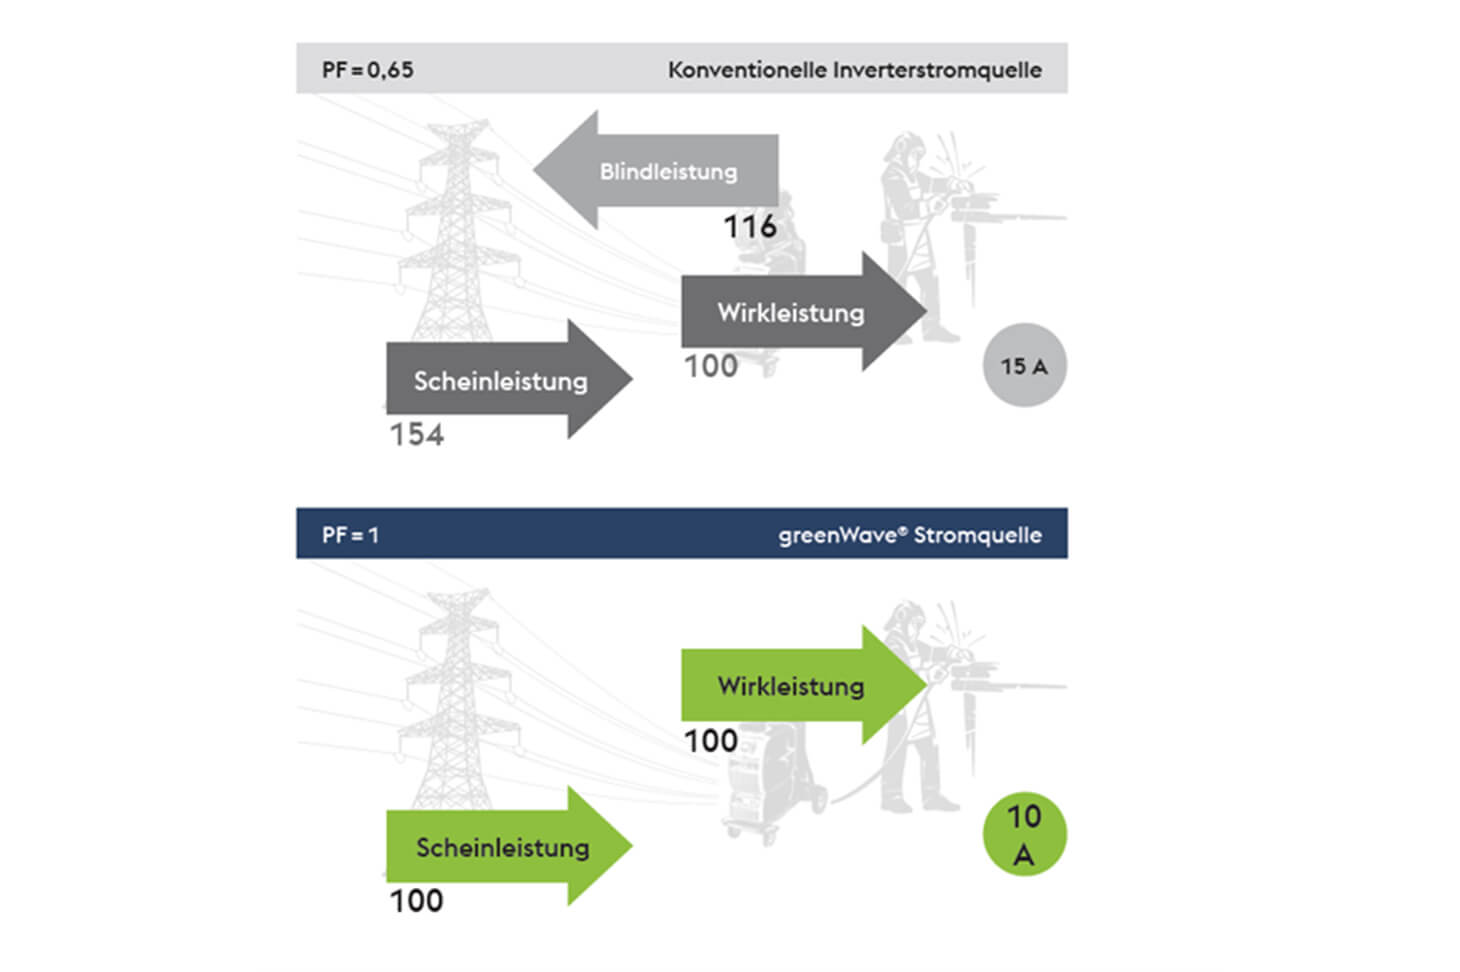 greenwave Stromquelle im Vergleich zu einer konventioneKllen Invertstromquelle.